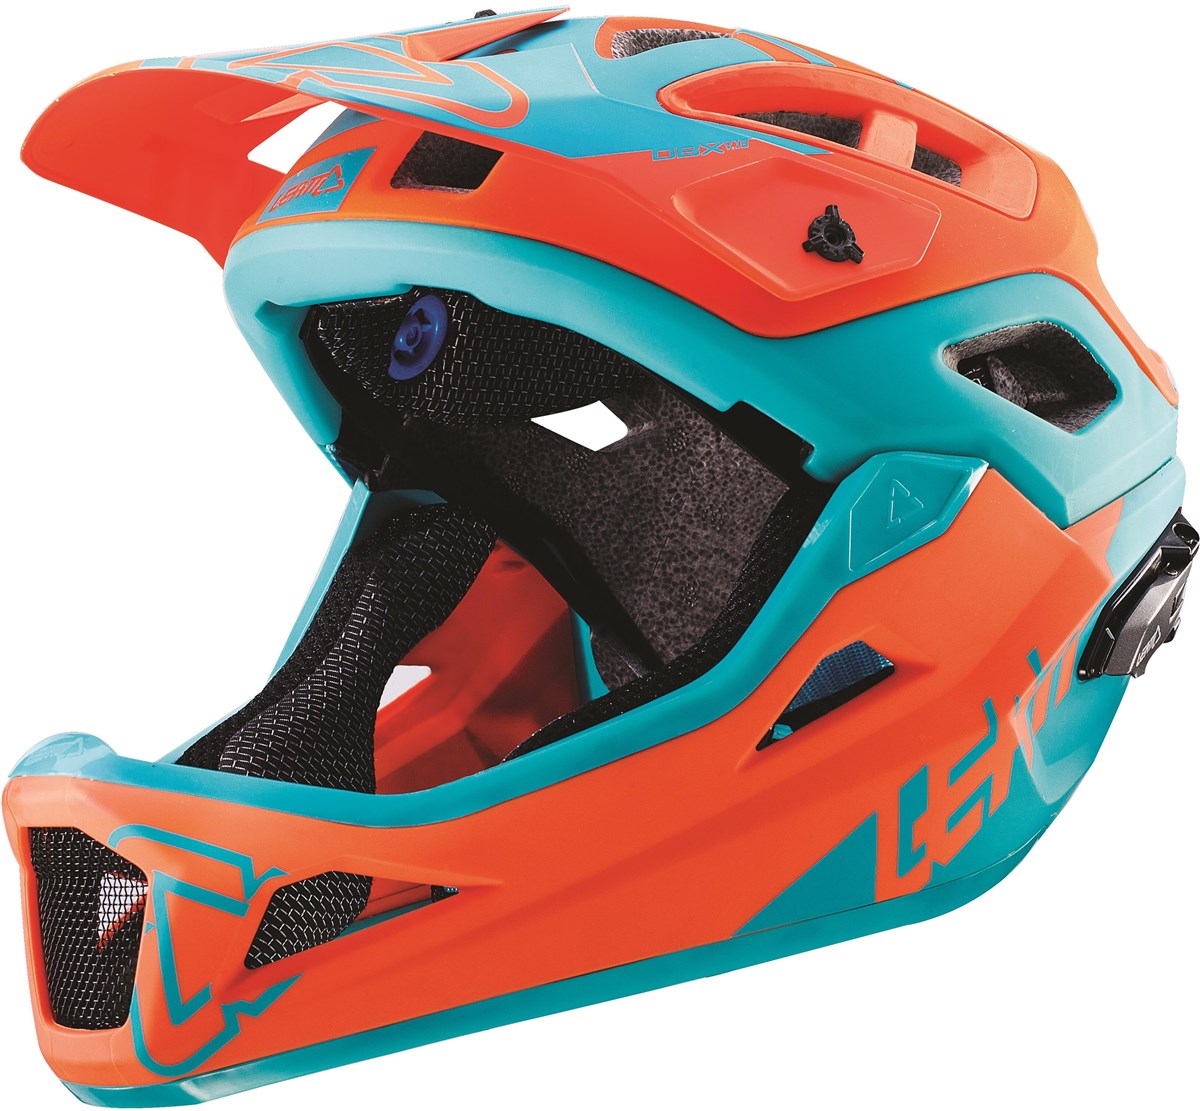 Leatt DBX 3.0 Enduro MTB Helmet product image